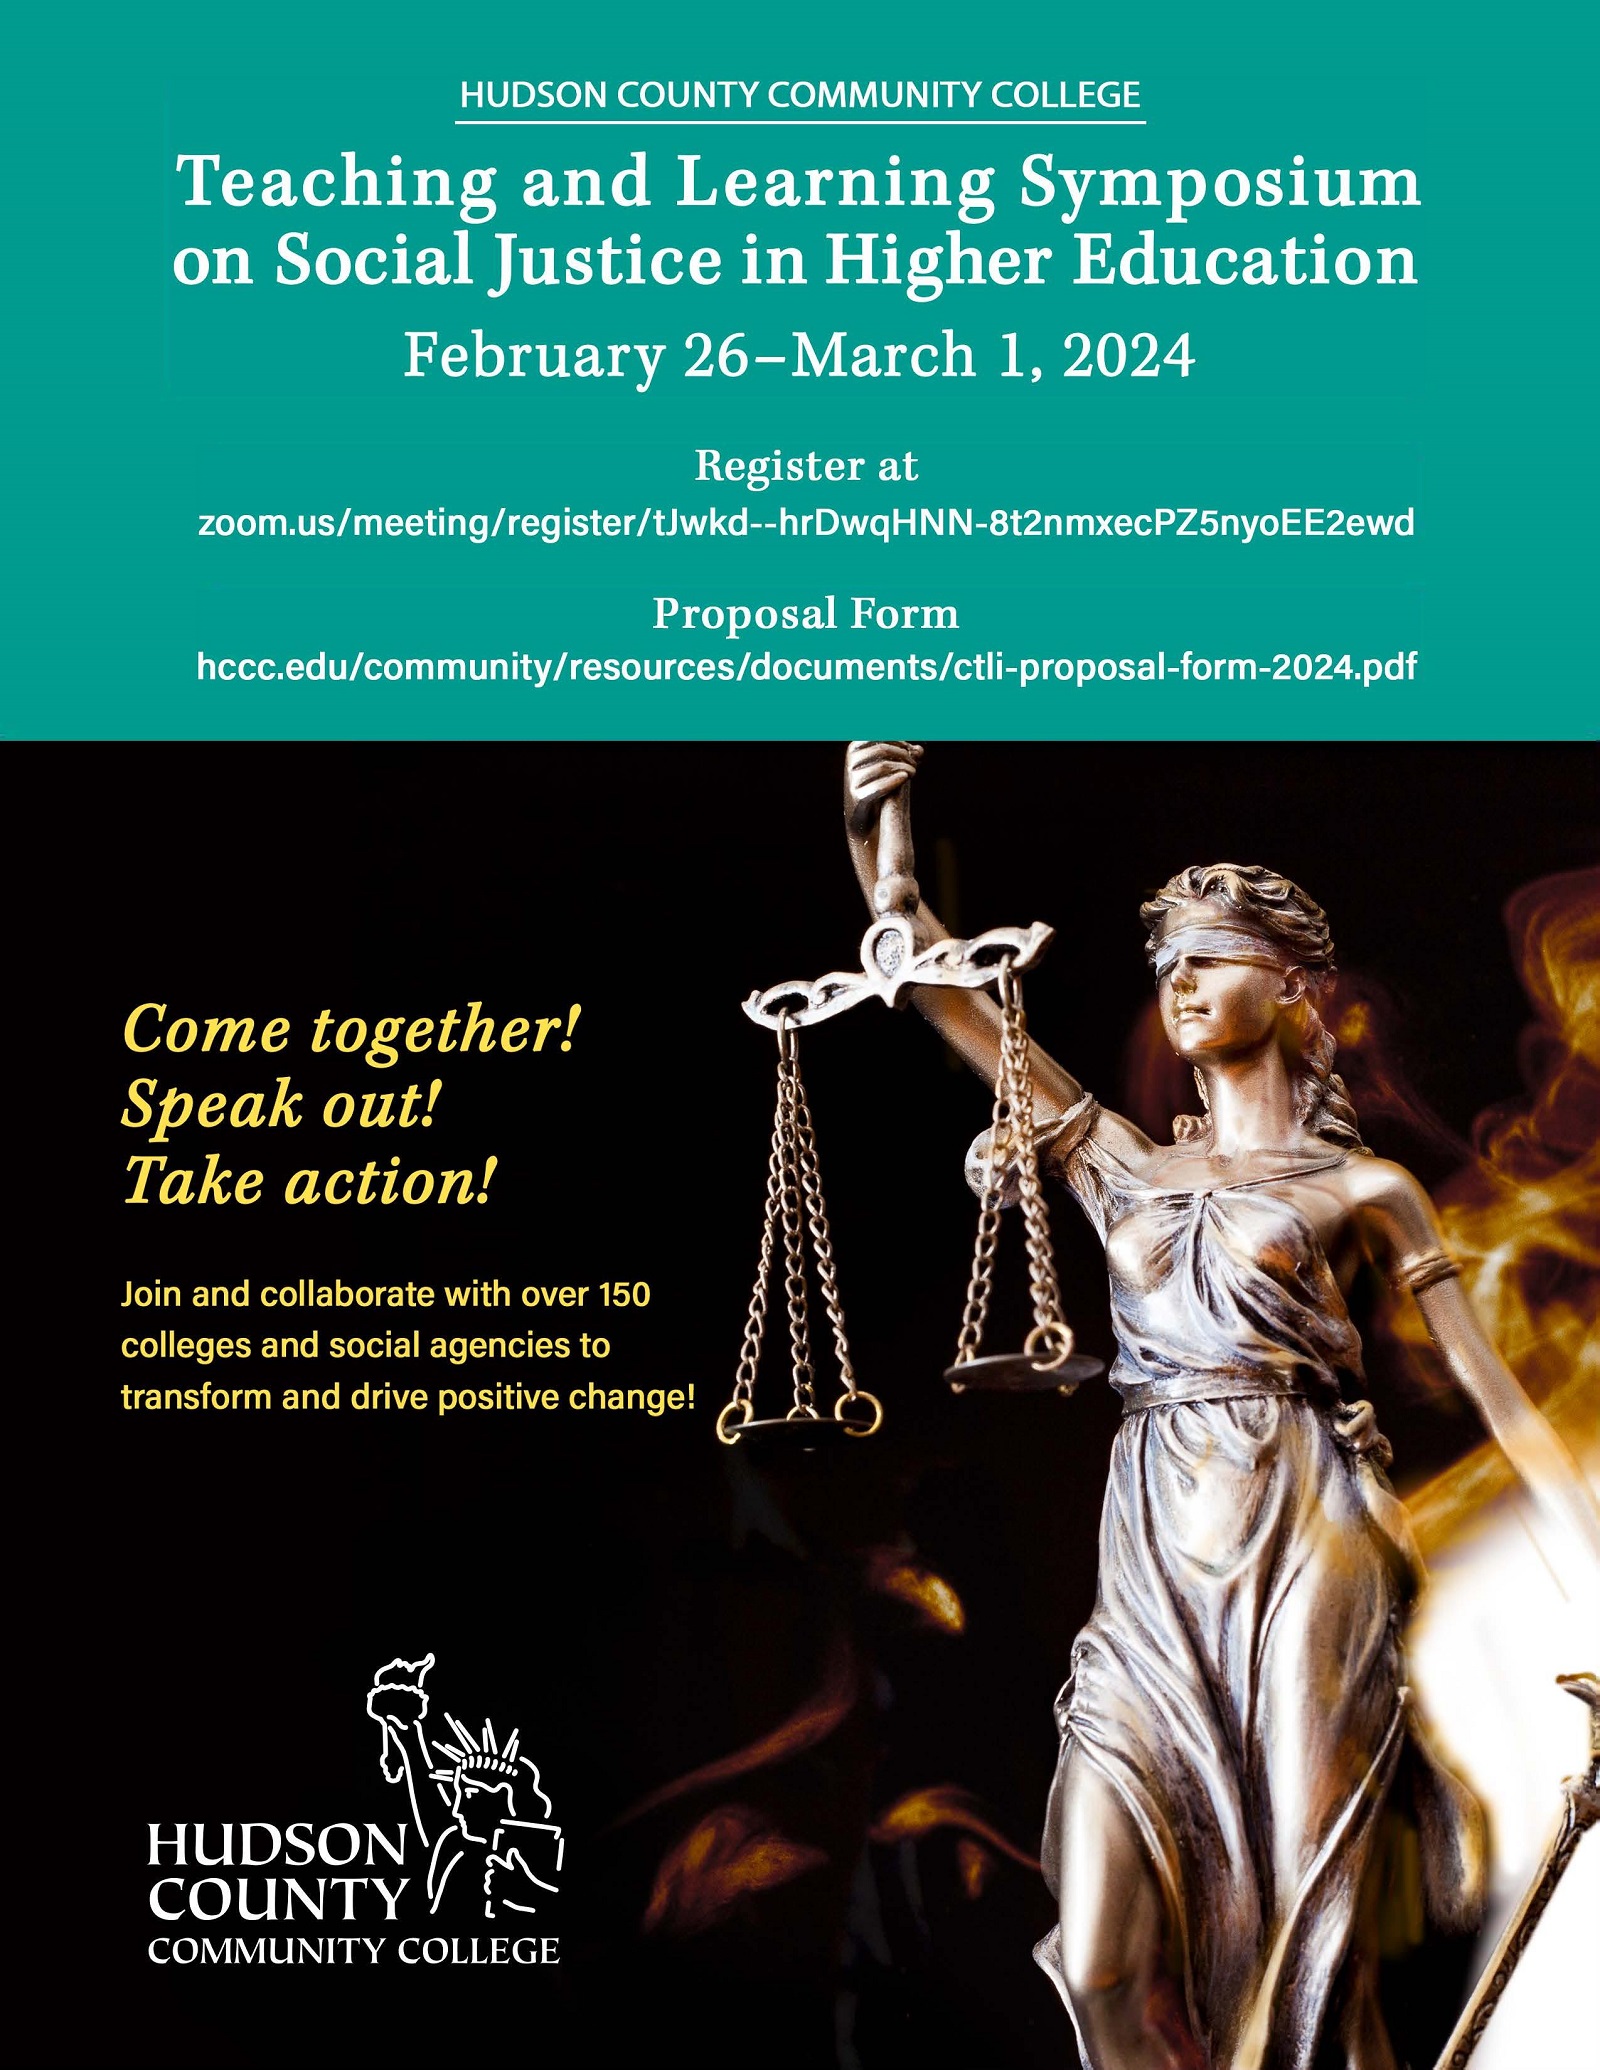 Simposio de enseñanza y aprendizaje sobre justicia social en la educación superior 2024